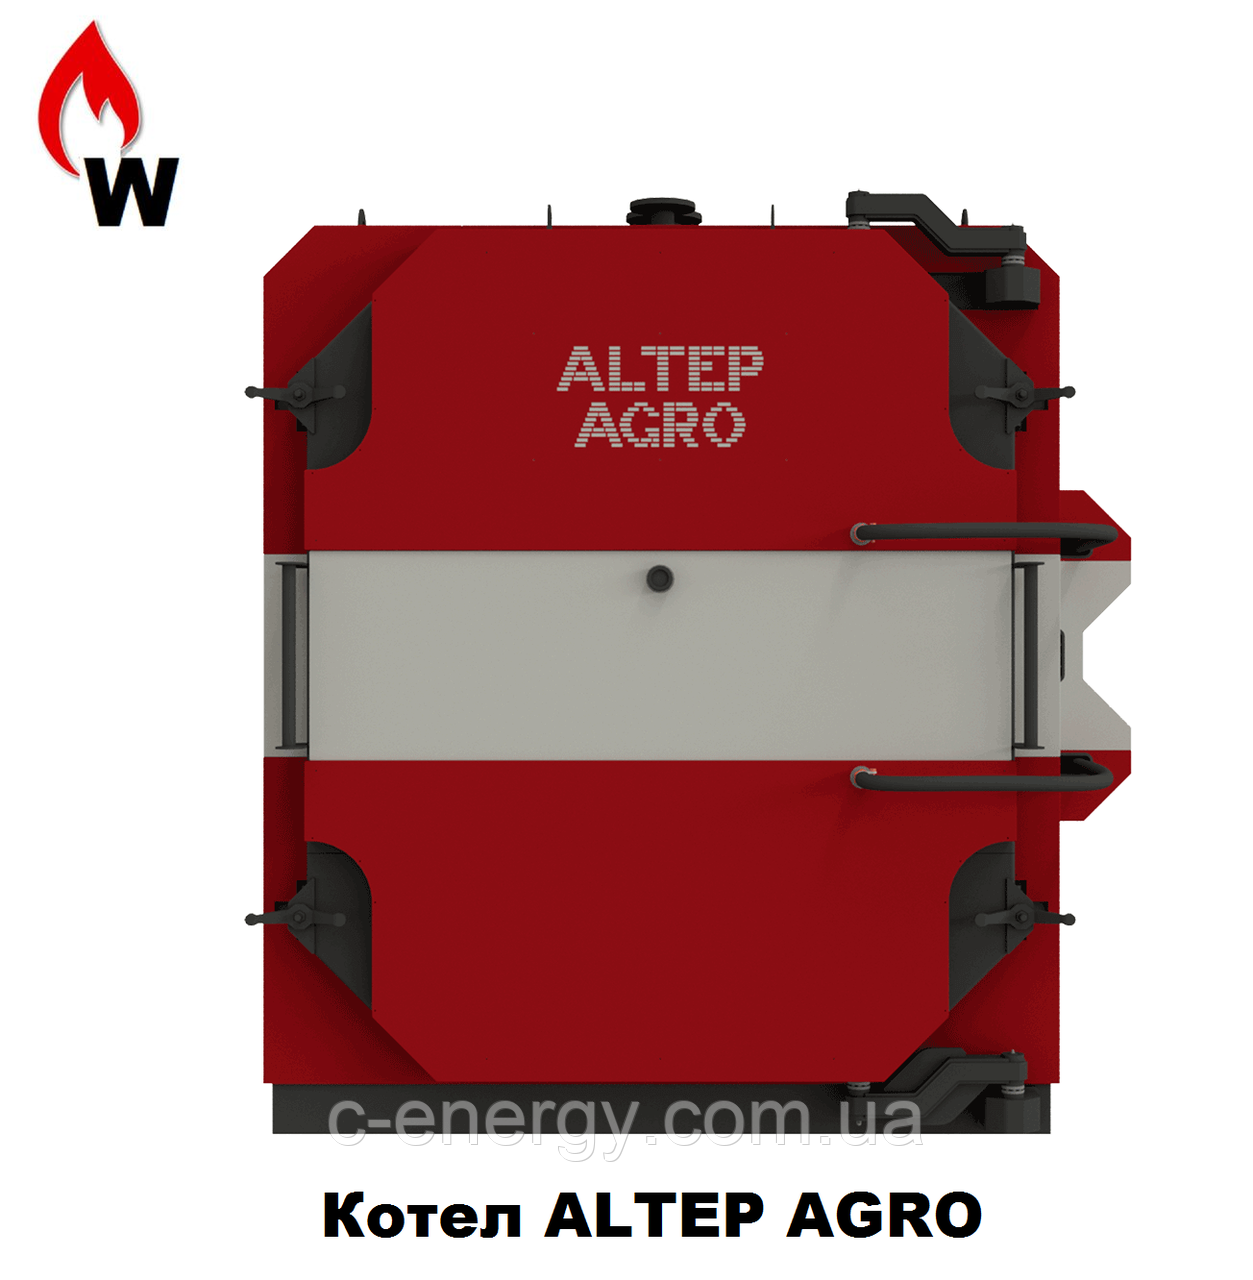 Котел Альтеп AGRO 150 кВт (працює на соломі)